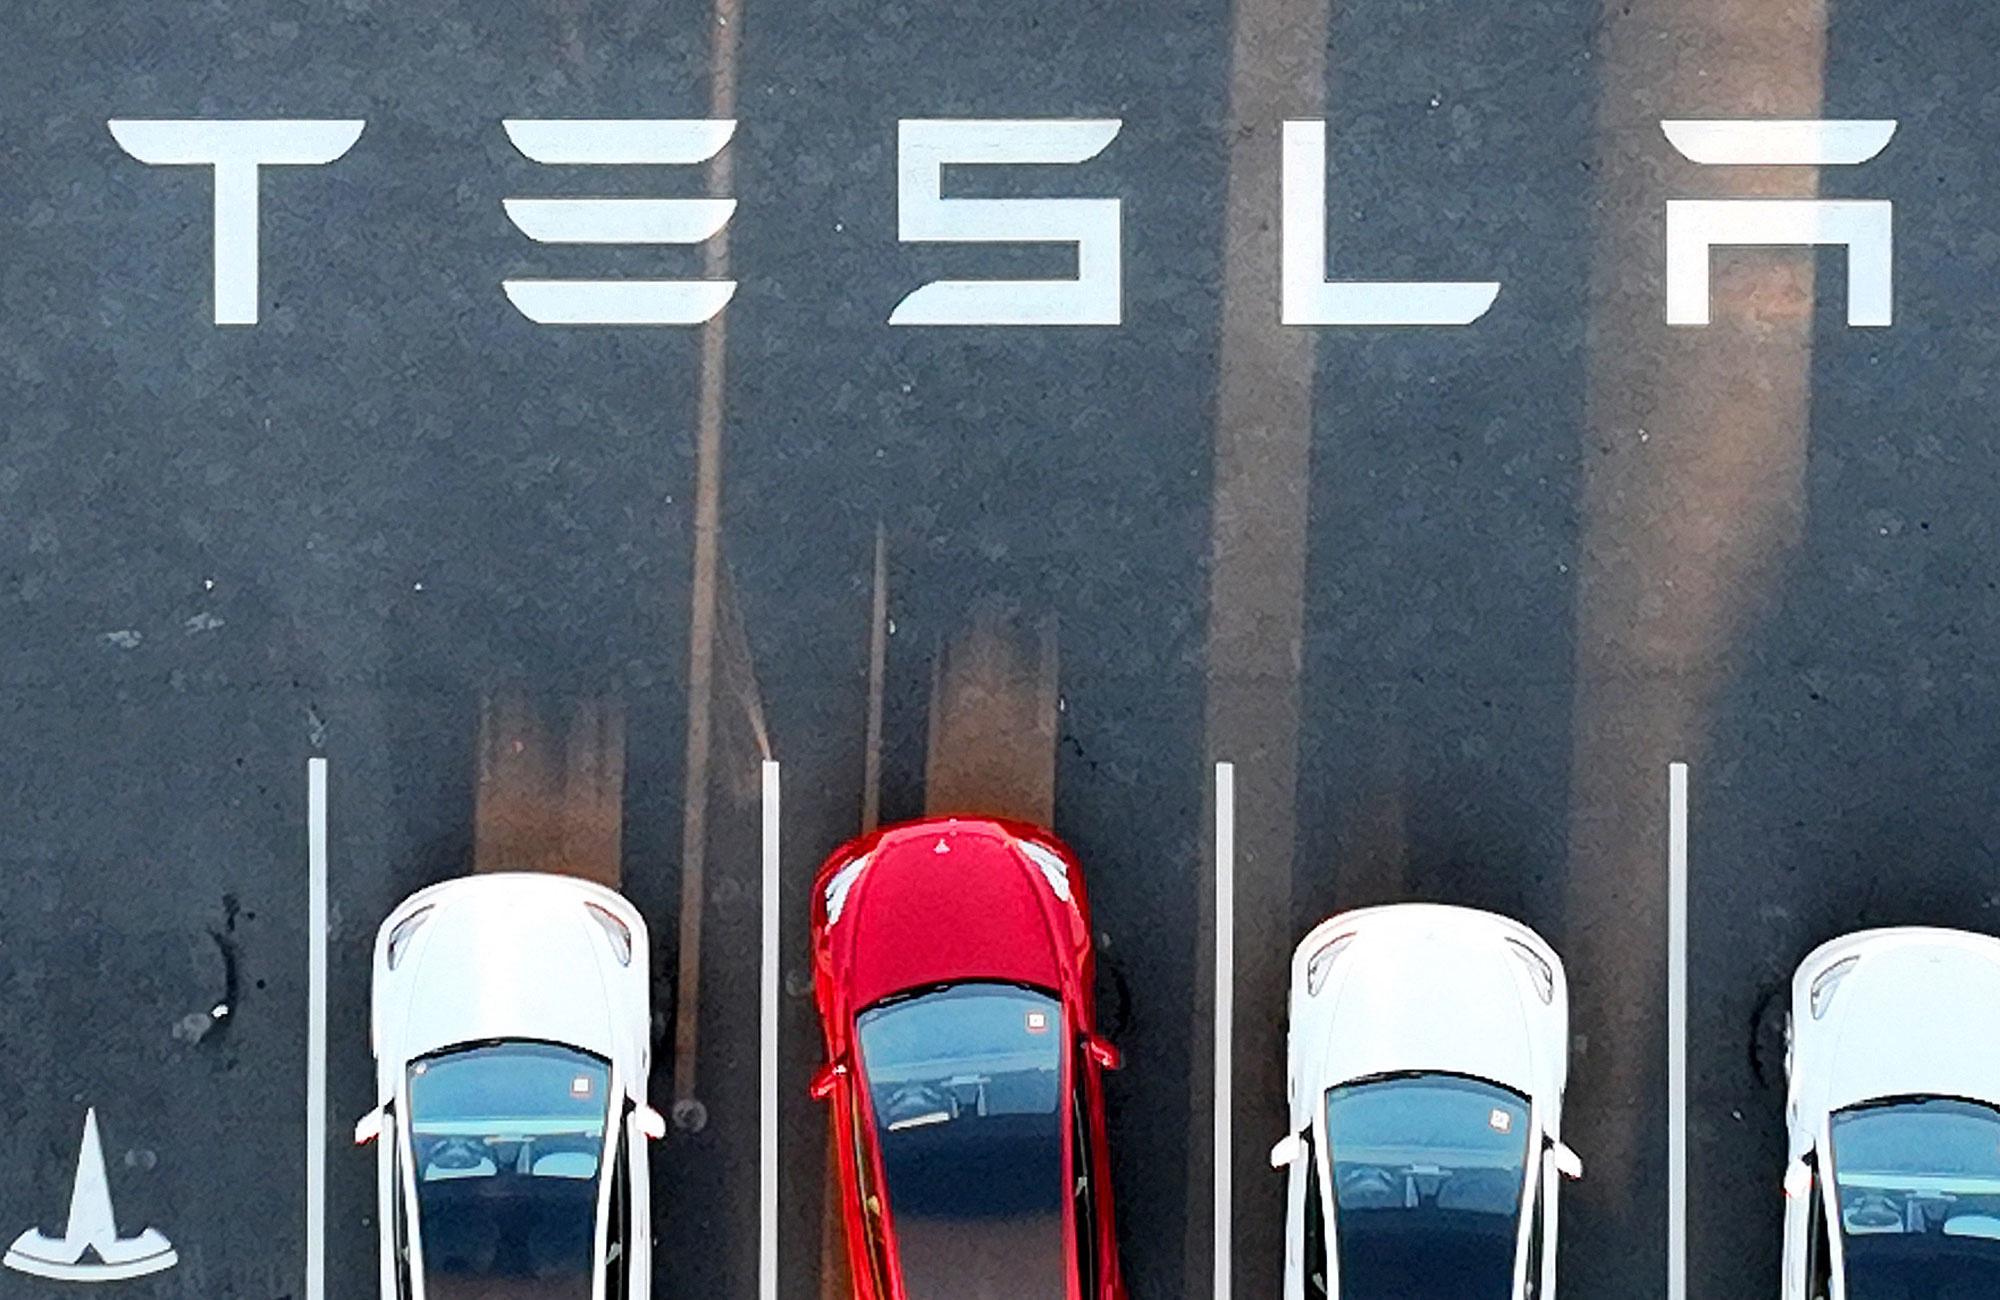 Tesla: que se passe-t-il dans son usine californienne ?